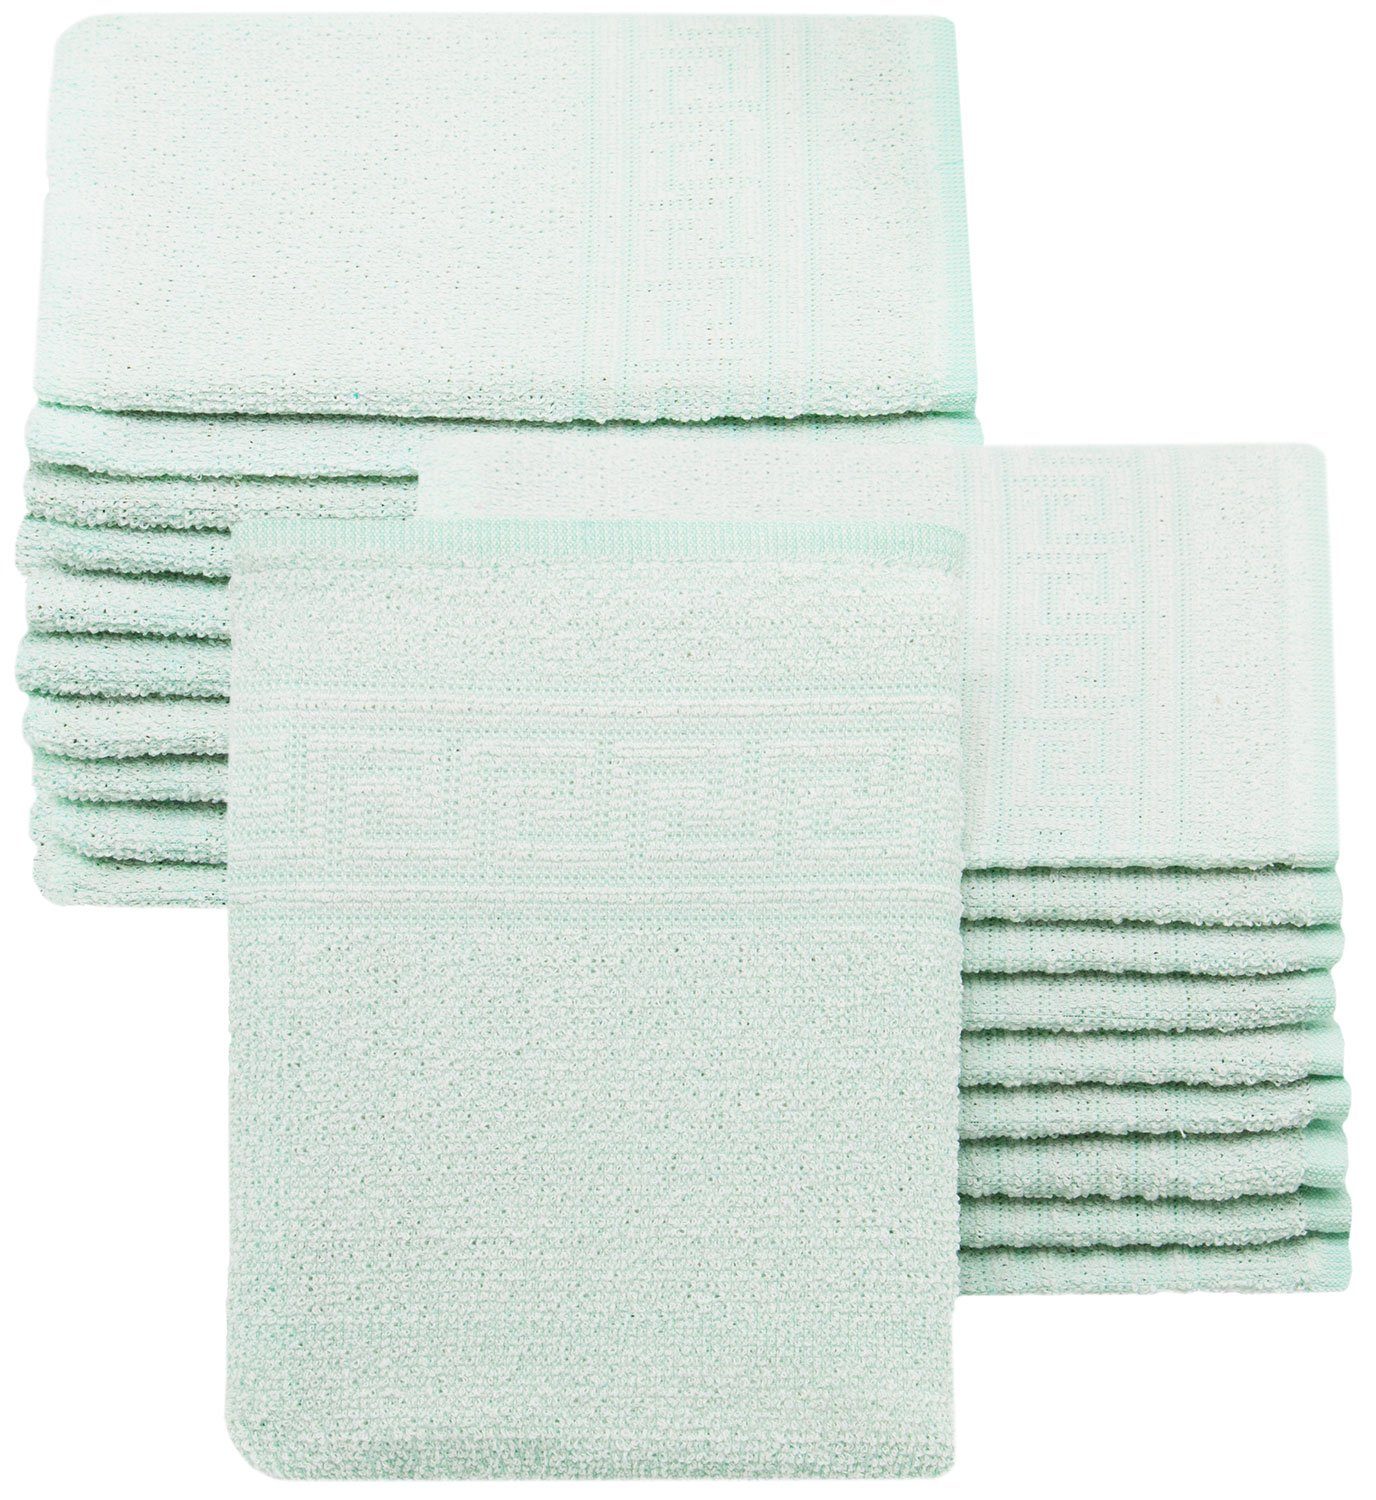 ZOLLNER Waschlappen (20-tlg), 16 x 22 cm, 80% Baumwolle, 20% Polyester grün